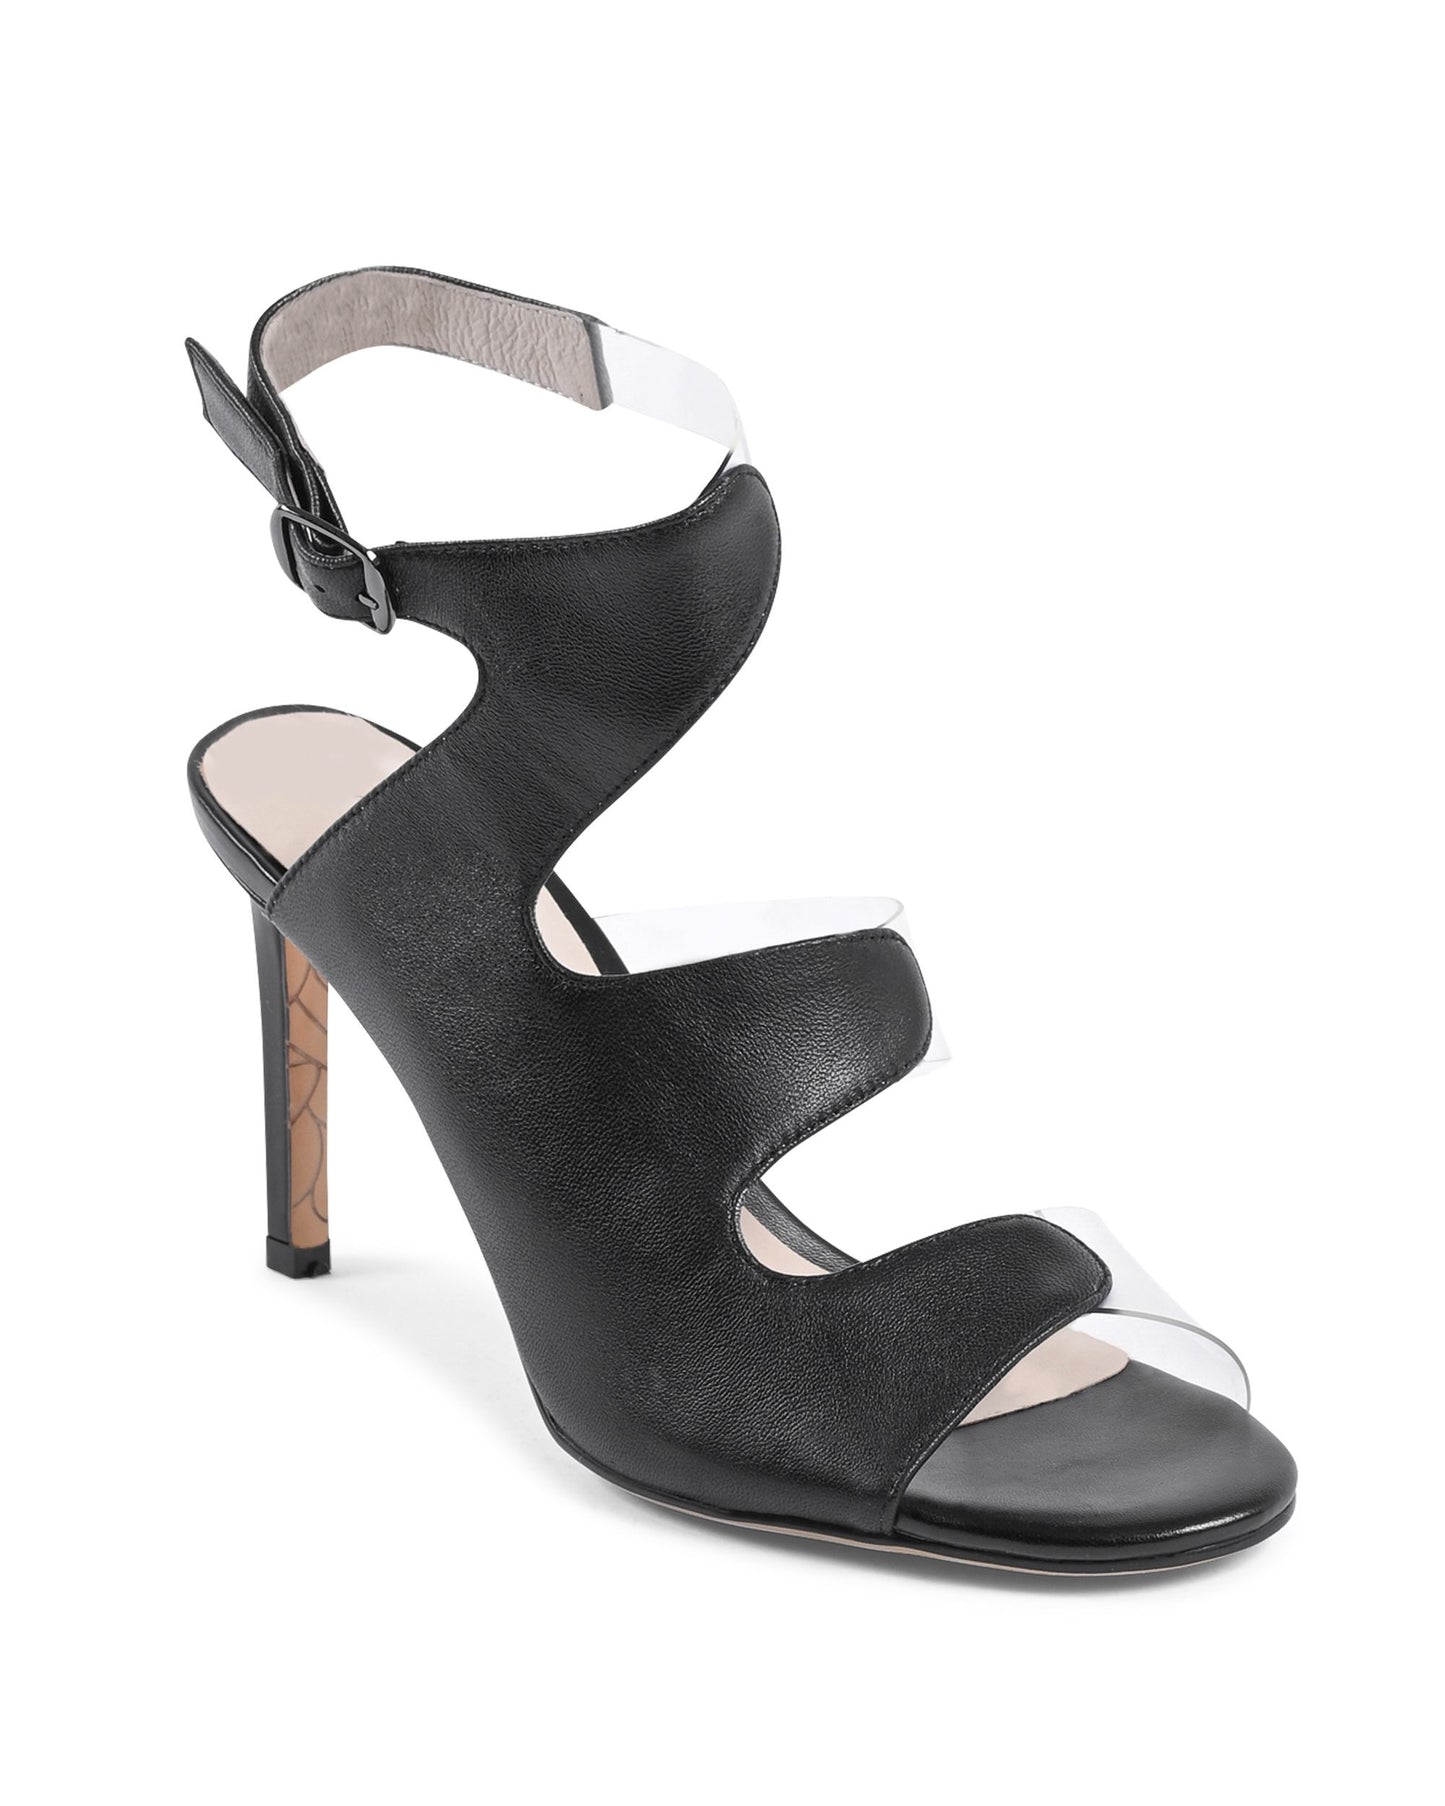 19V69 Italia Womens Sandal Black AM NW125-61 BLACK